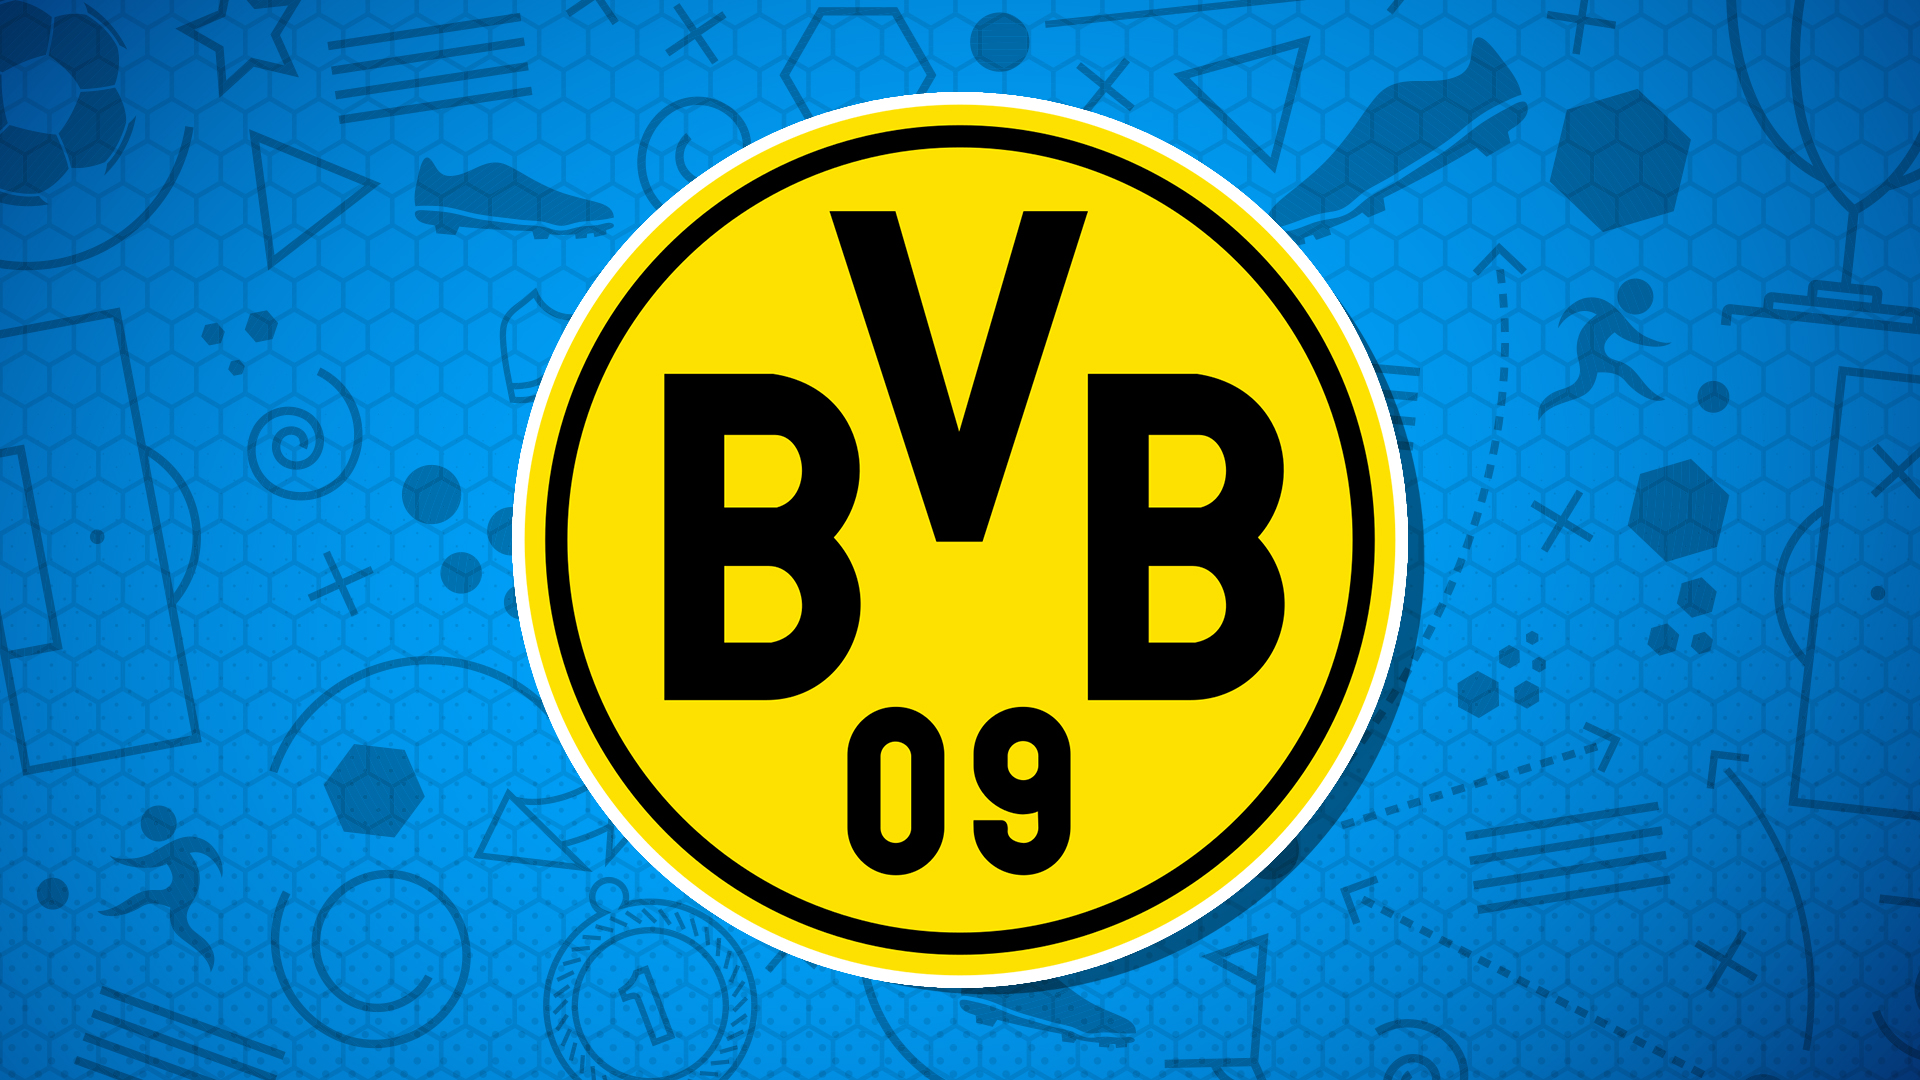 BVB 09 badge